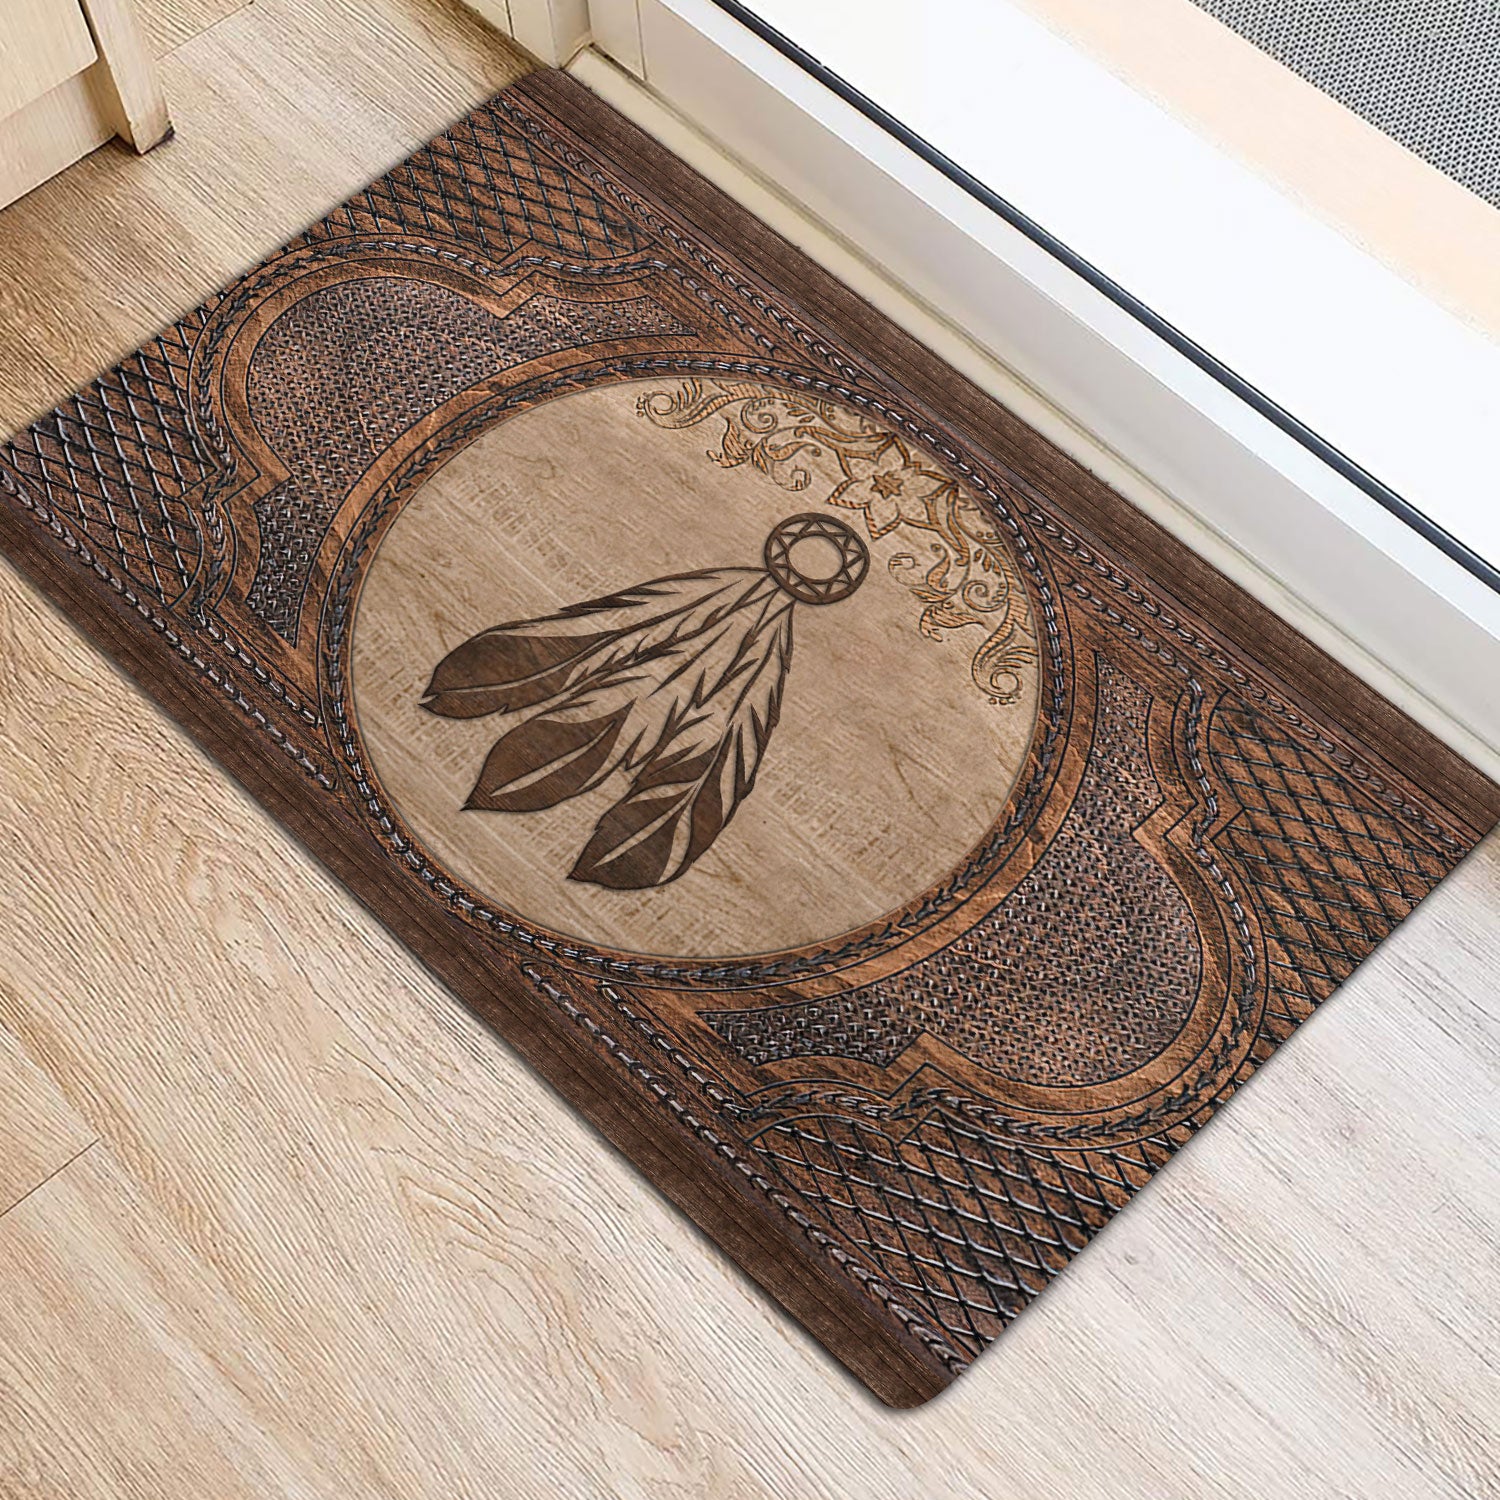 Ohaprints-Doormat-Outdoor-Indoor-Native-American-Feather-Indigenous-Us-Indian-Sculpture-Wood-Rubber-Door-Mat-51-